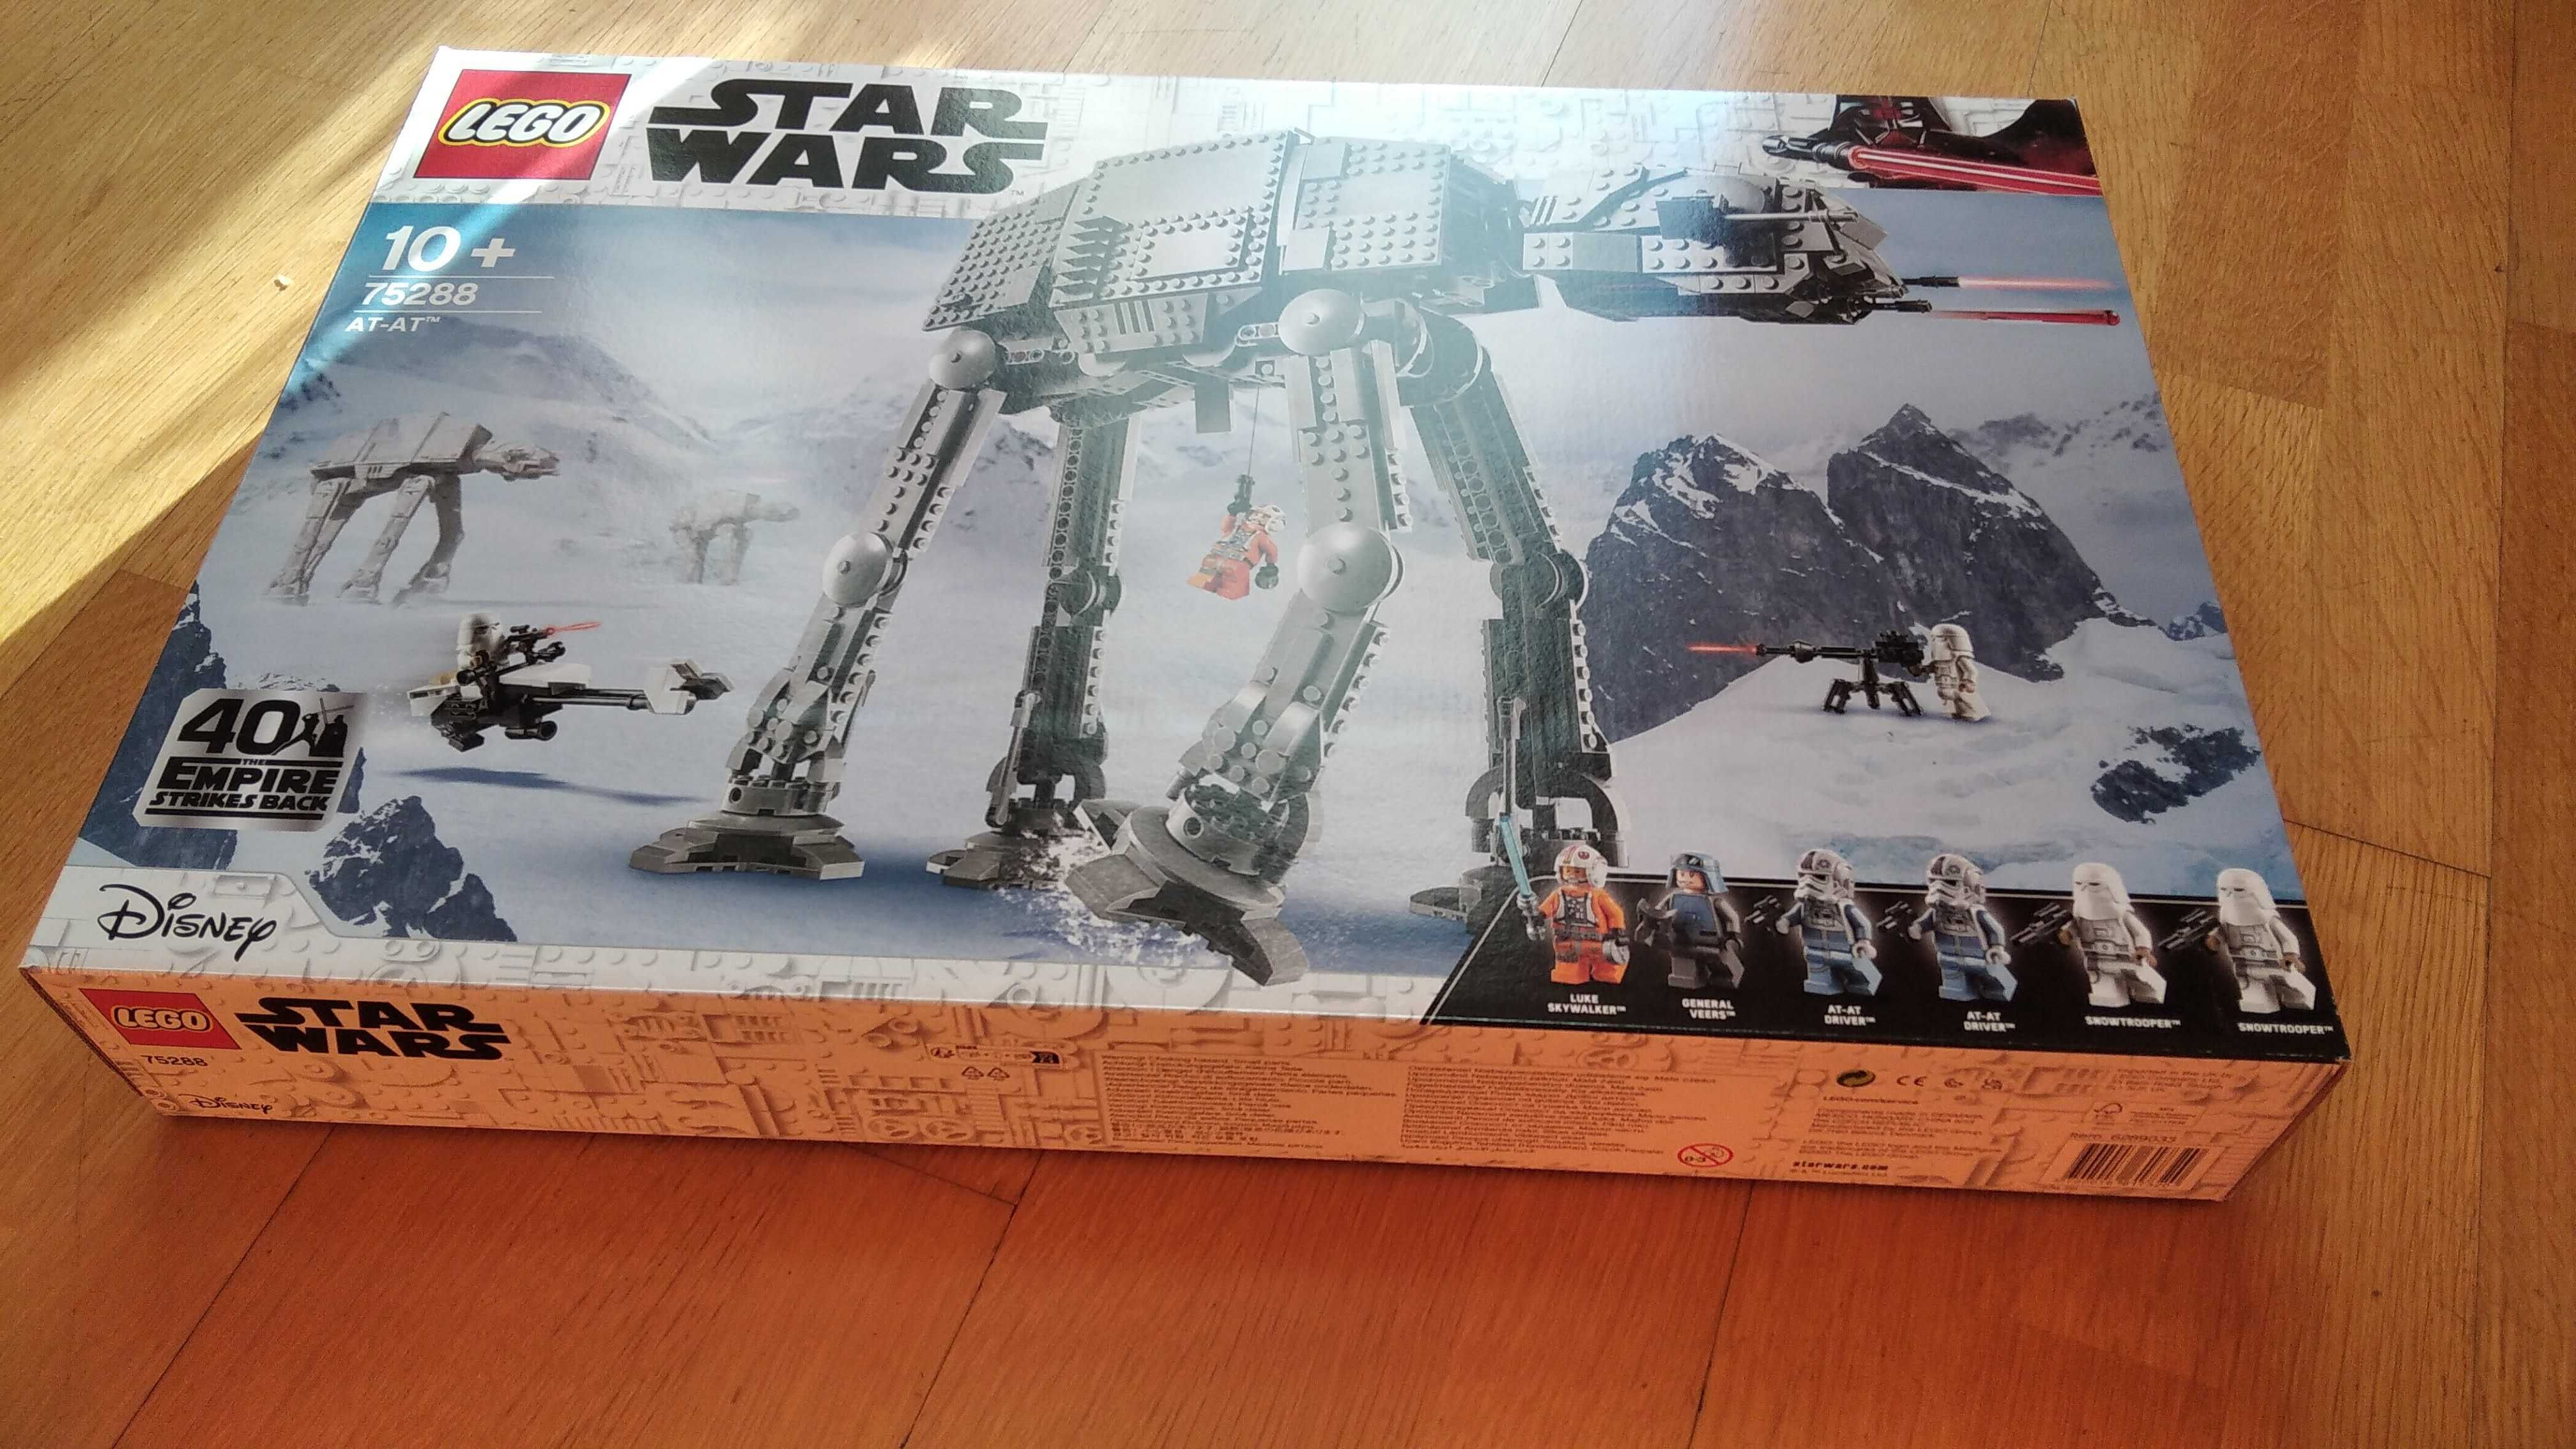 LEGO Star Wars 75288 - AT-AT